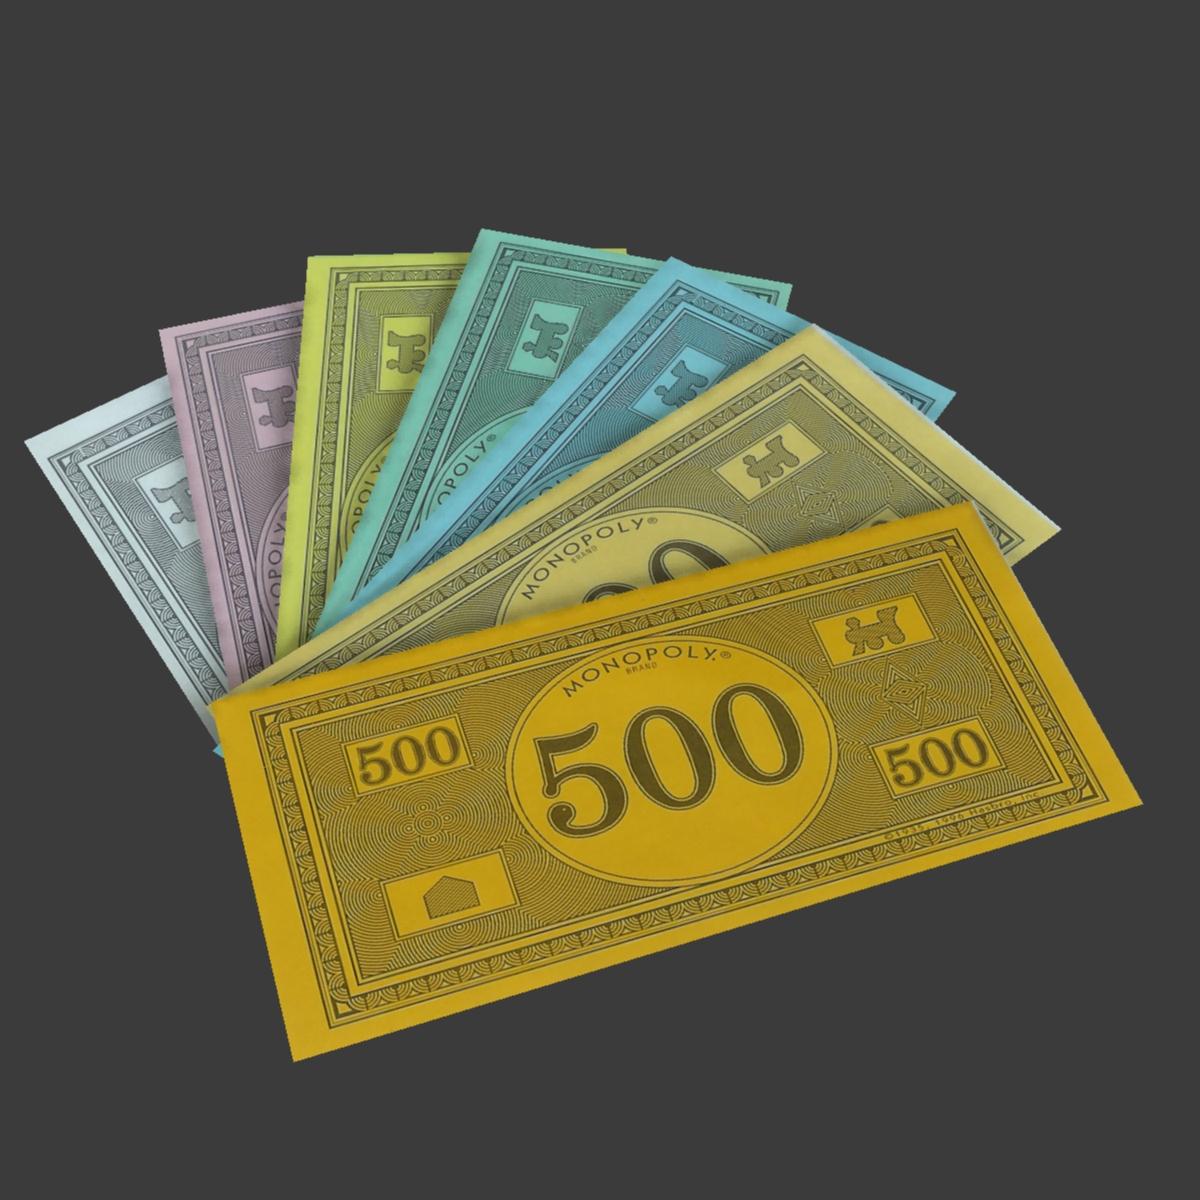 monopoly-money-01.jpg